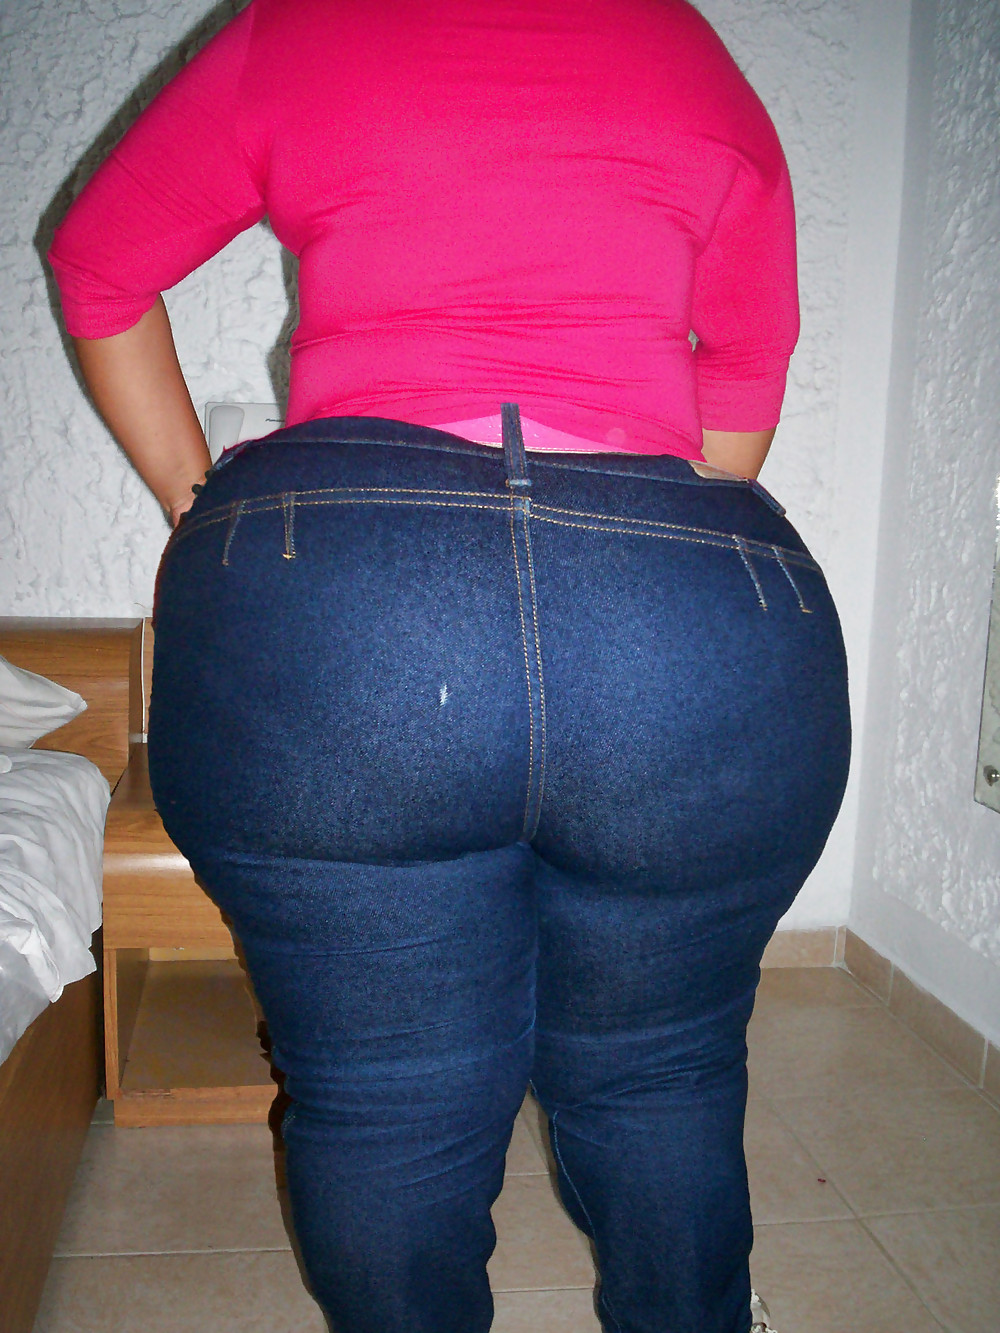 Big Booty Women in Jeans #6803728